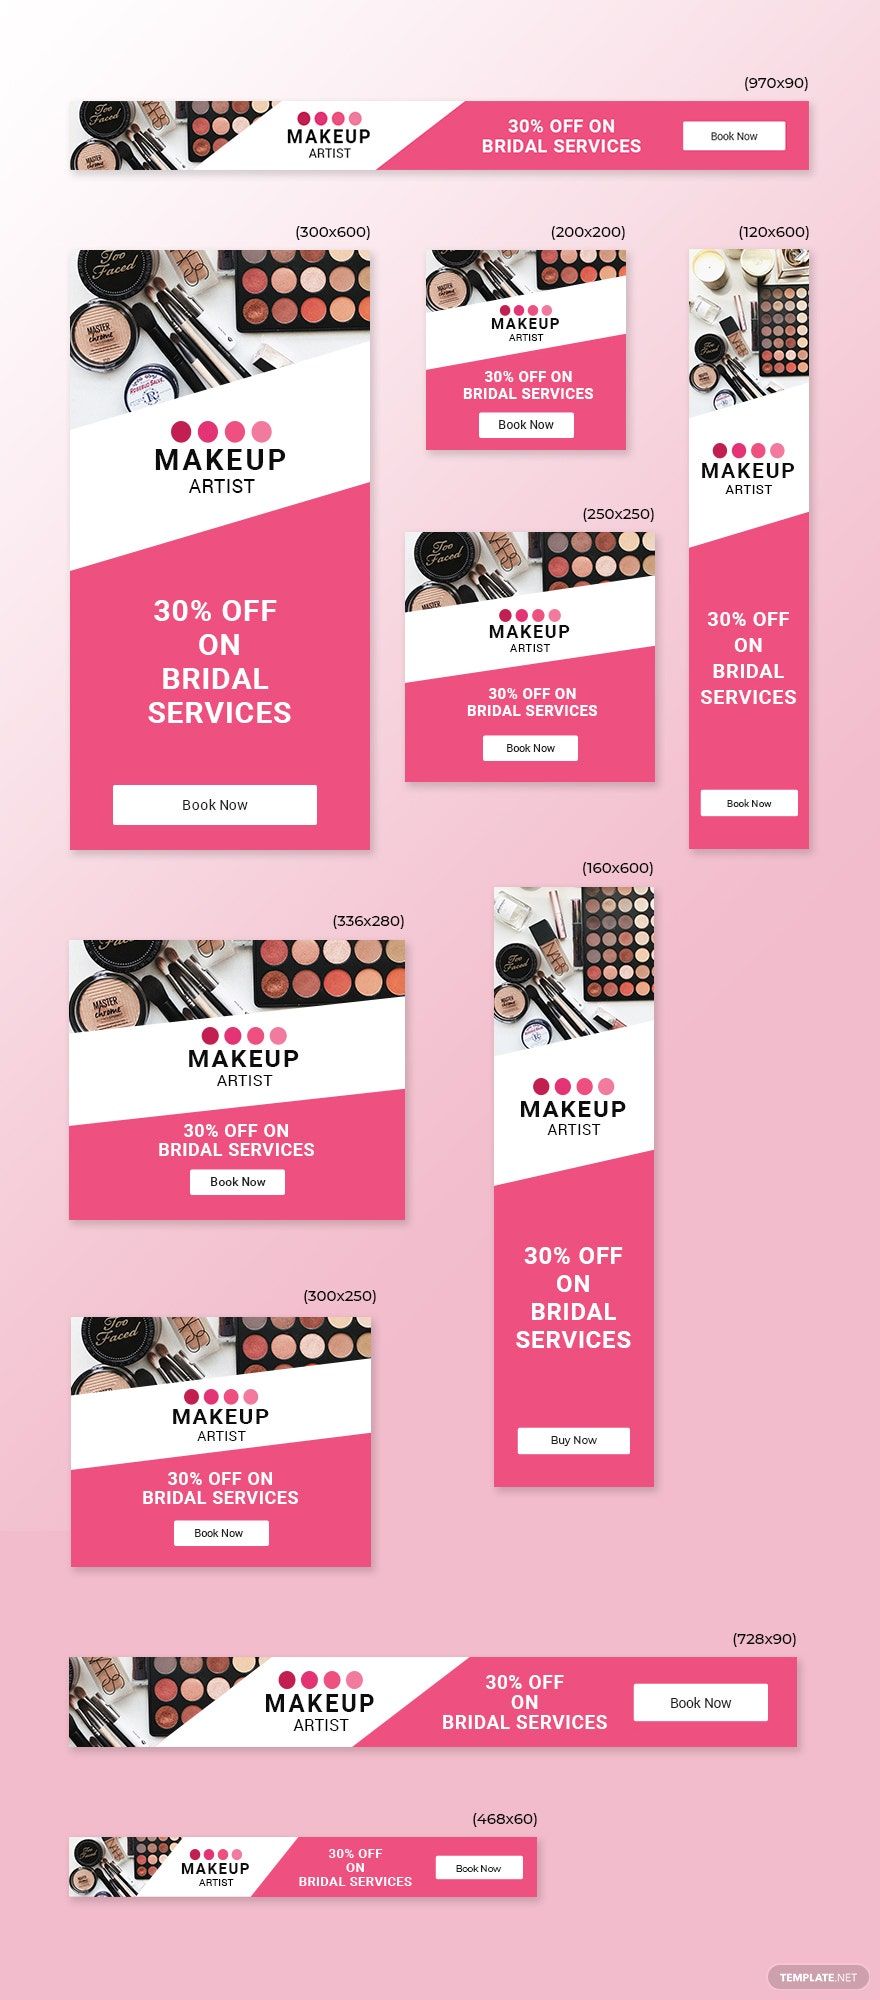 Makeup Artist Web Ads Template